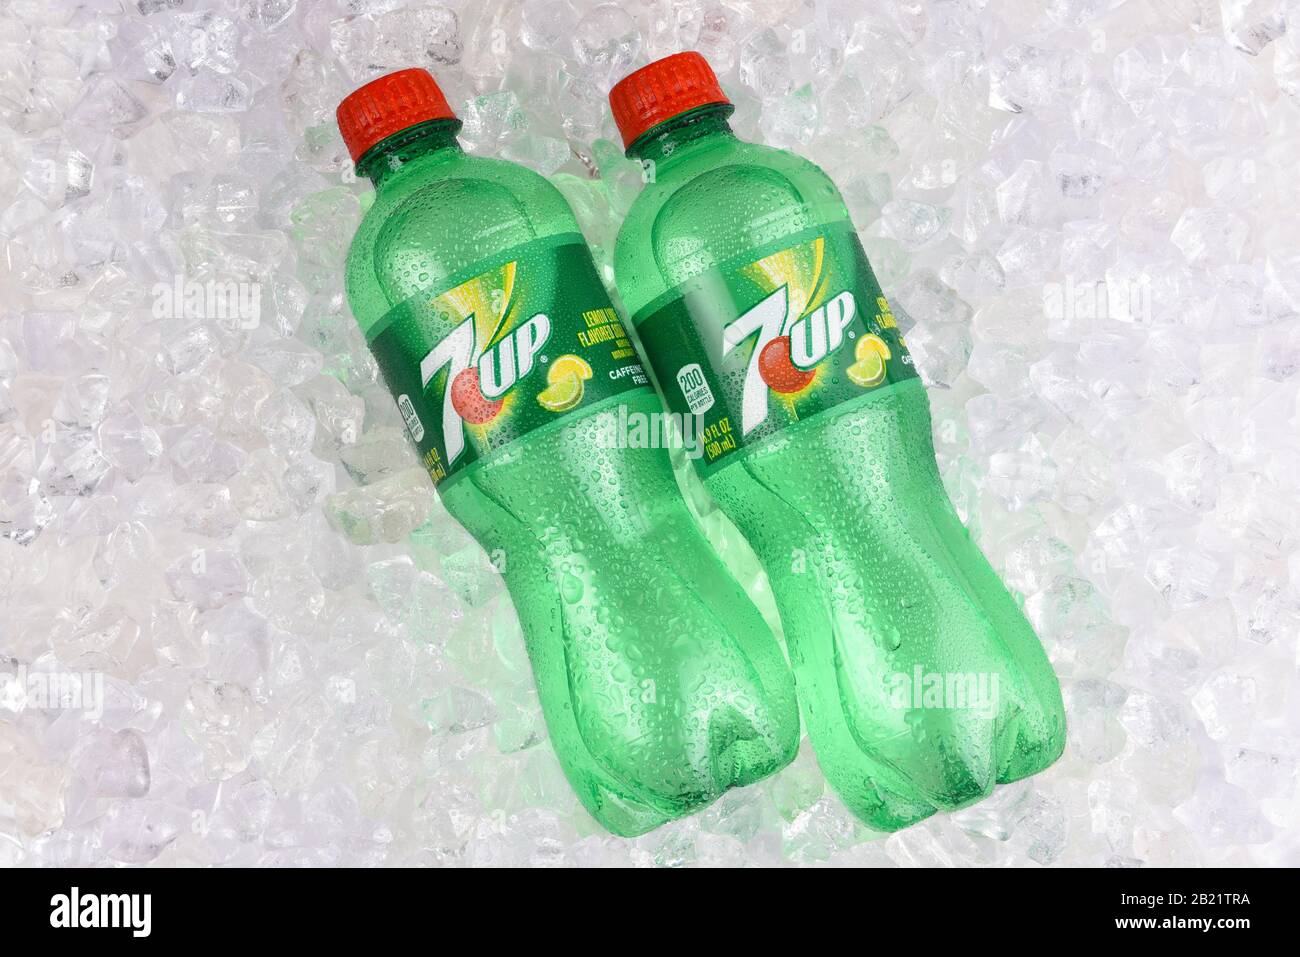 Irvine, KALIFORNIEN - 19. AUGUST 2019: Zwei 7-Up-Limonadenflaschen aus Kunststoff in Eis. Stockfoto